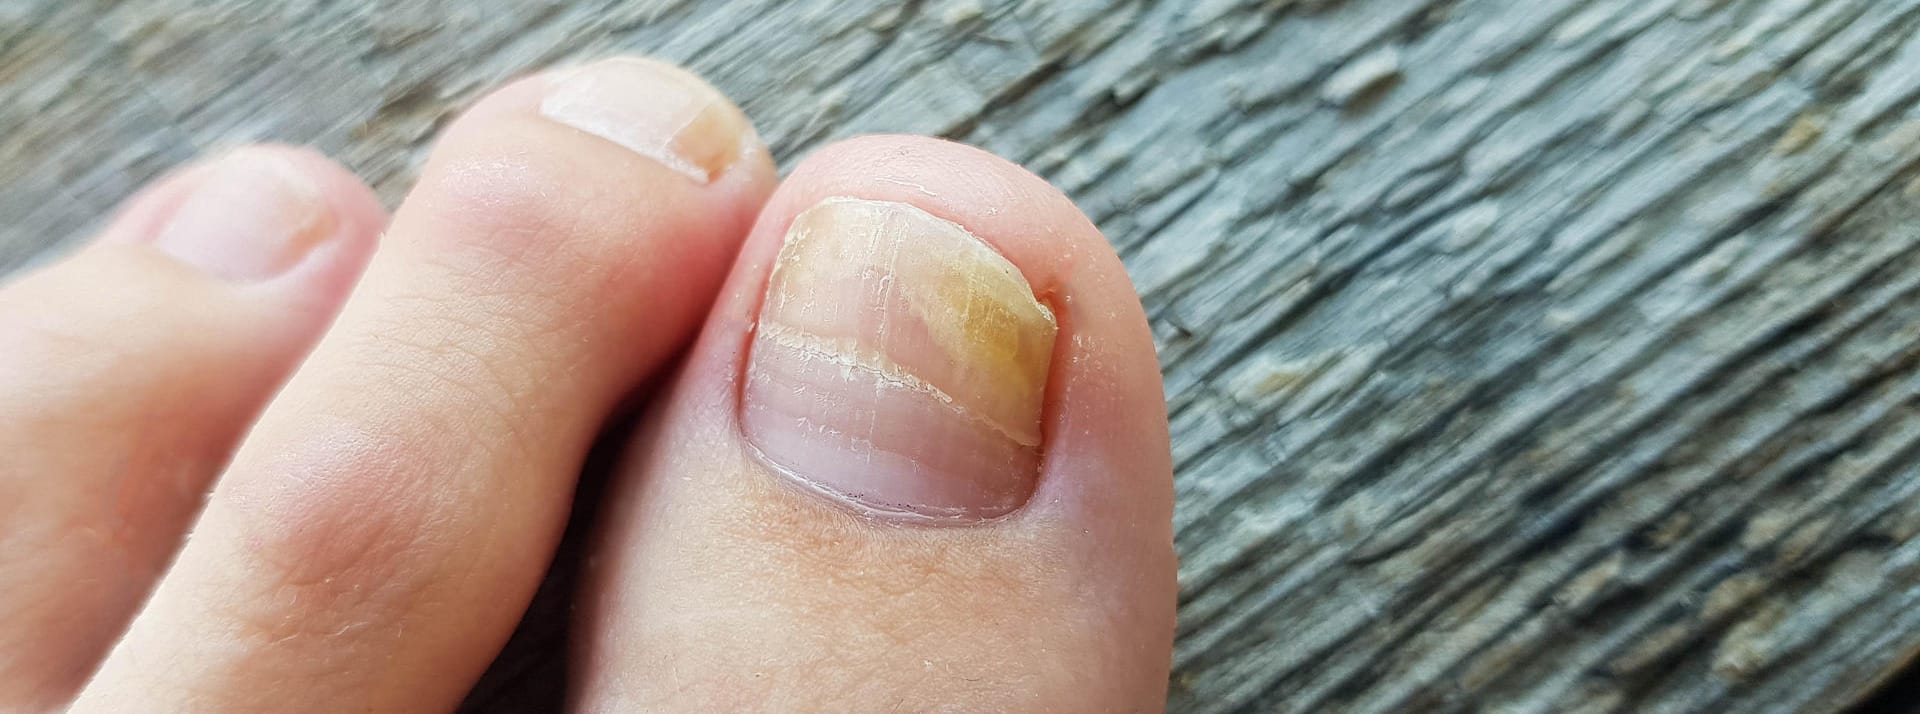 Nagelveränderungen durch Nagelpilz: Fußpilz kann auf die Nägel übergehen.